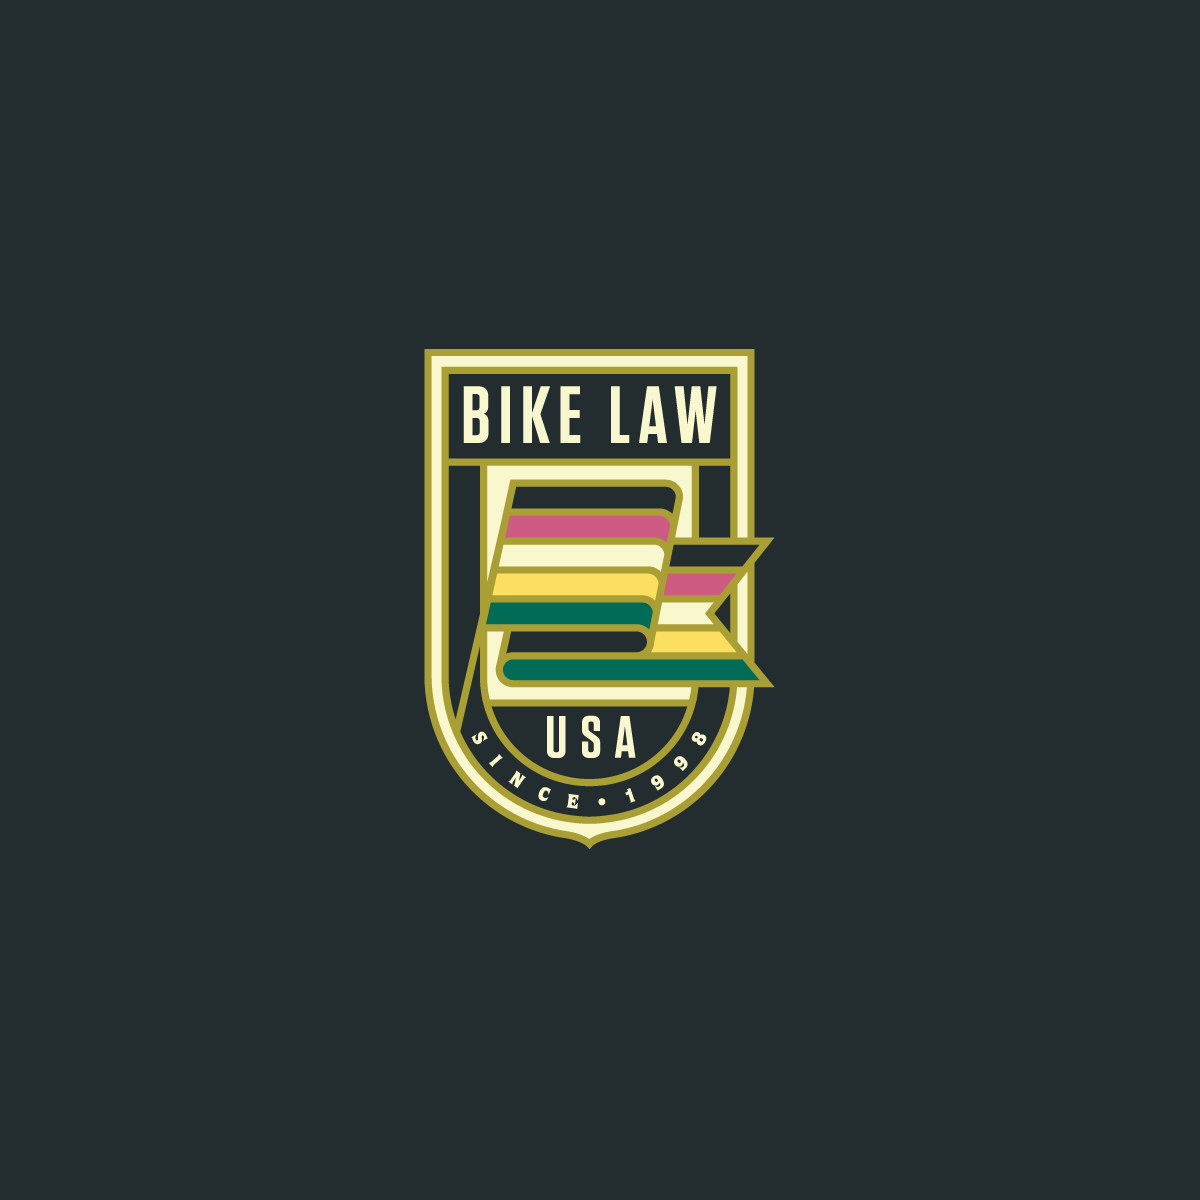 www.bikelaw.com